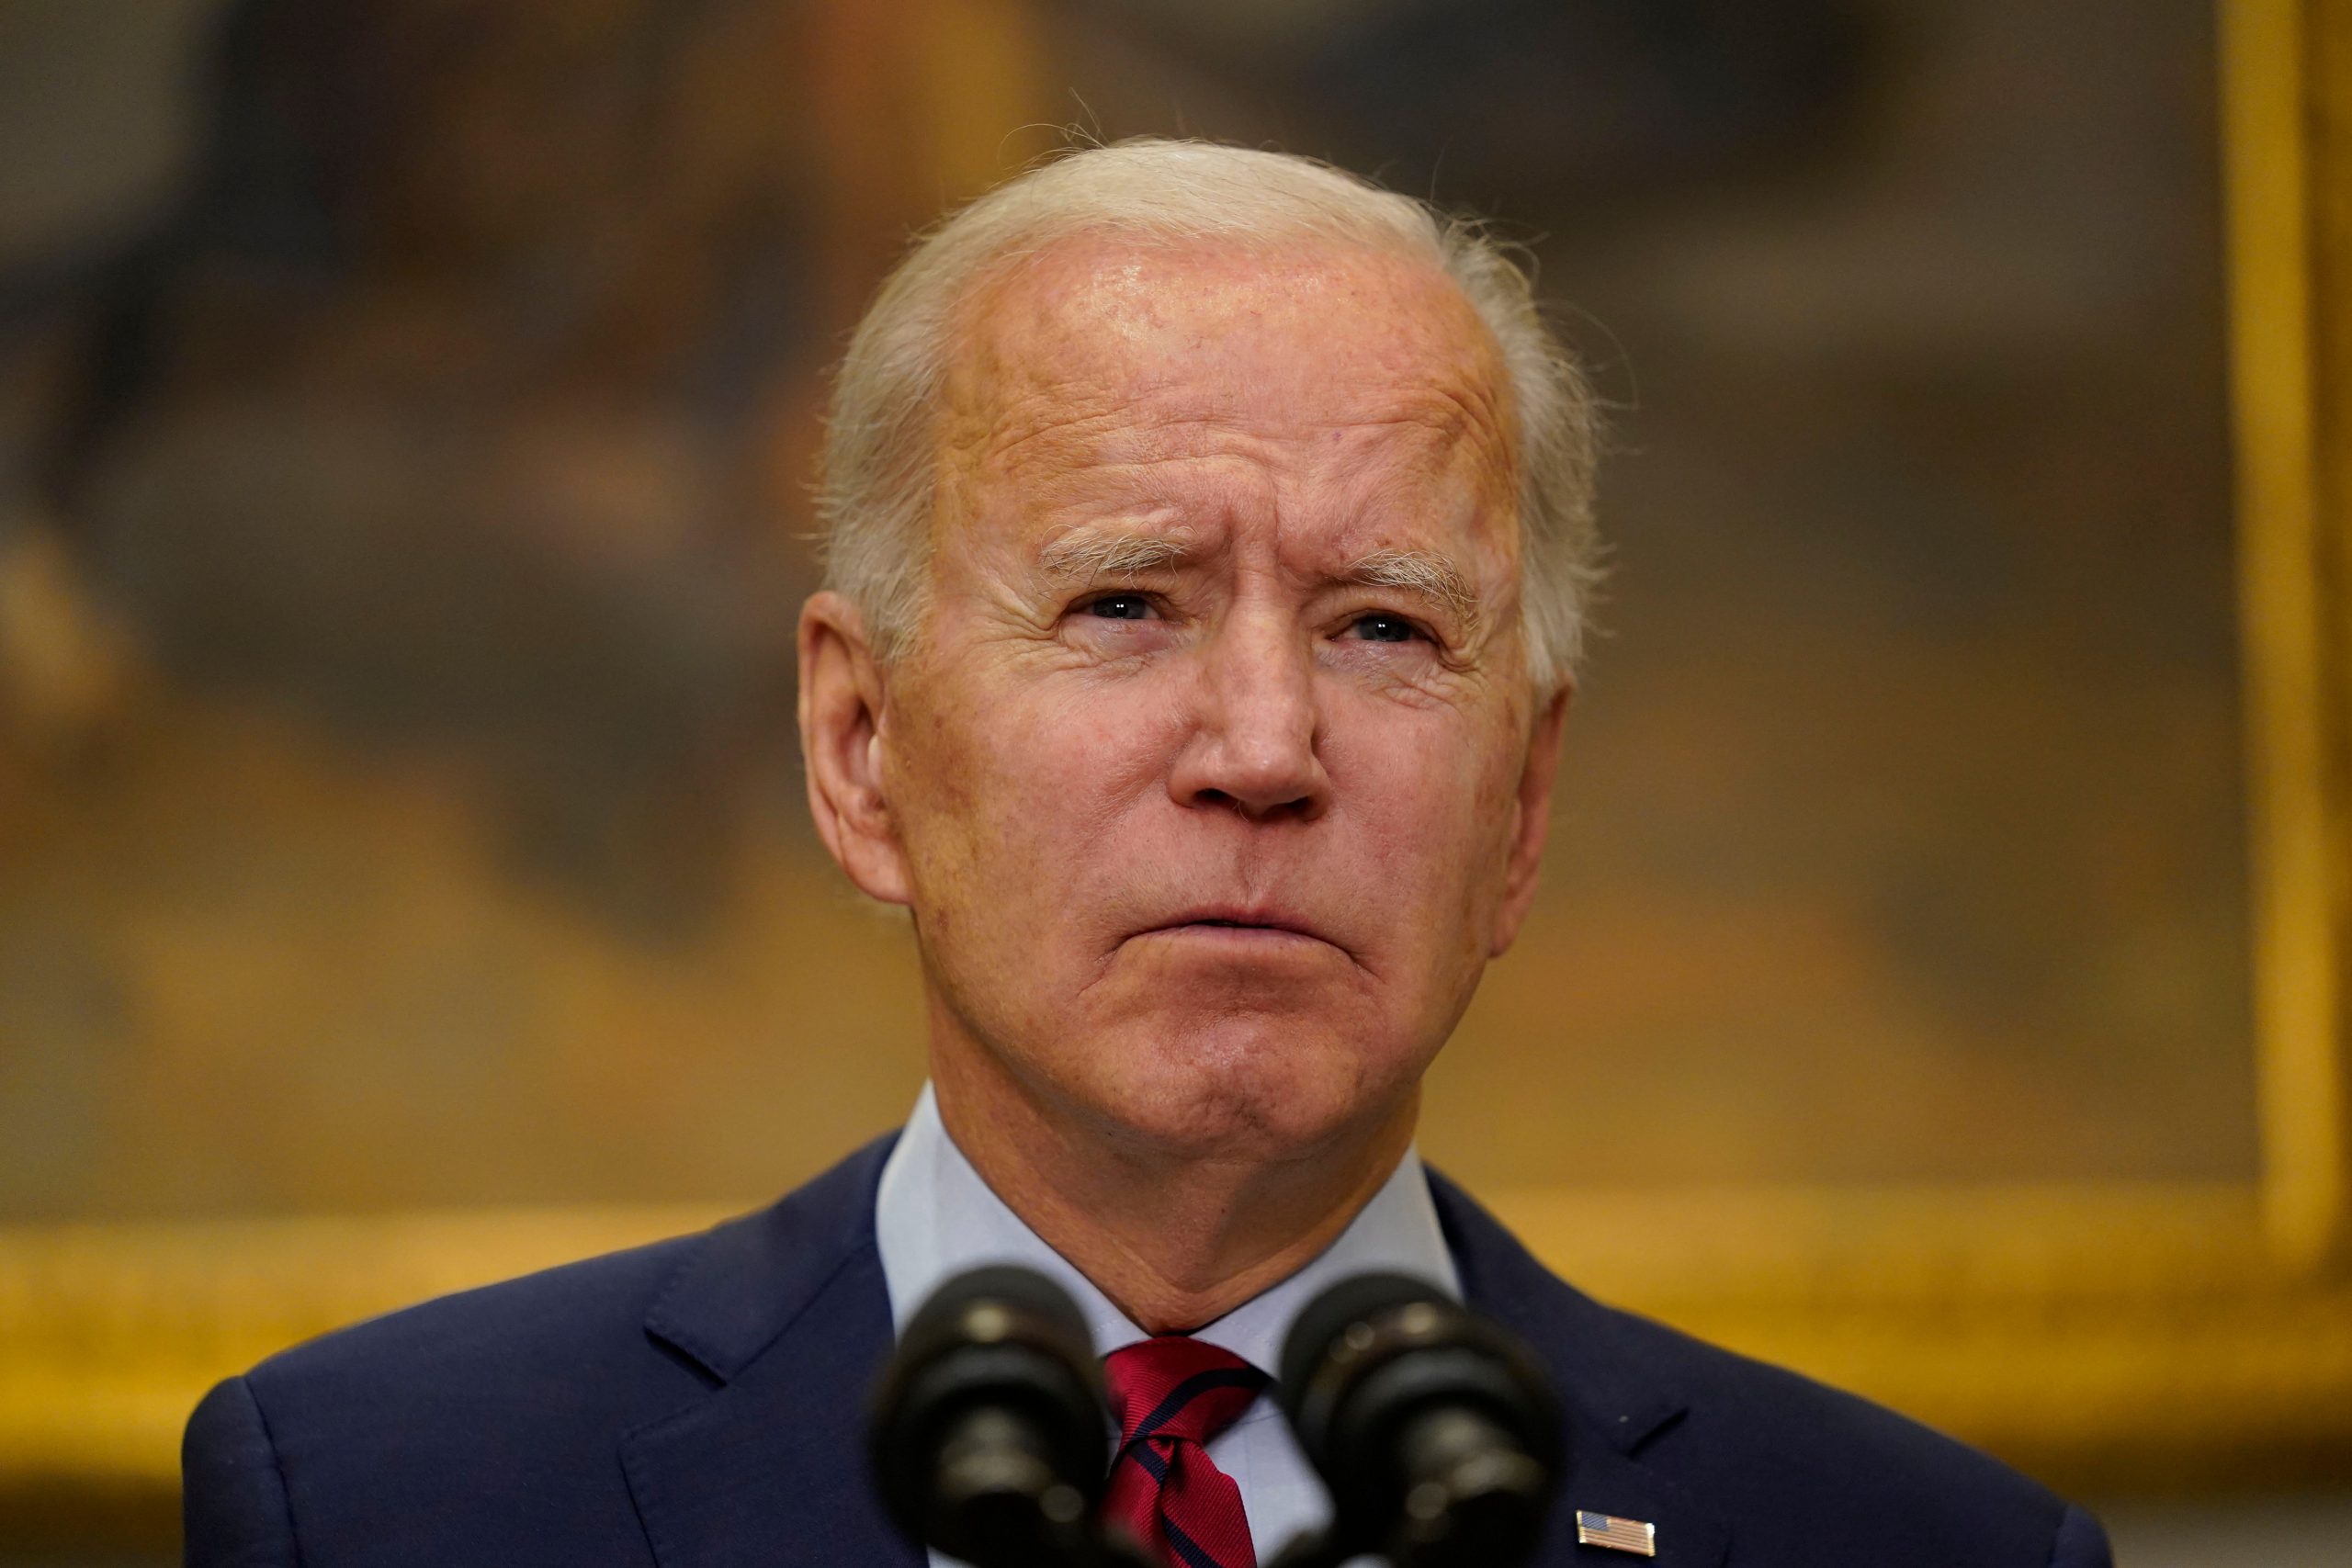 Joe Biden under growing pressure over ‘border crisis’